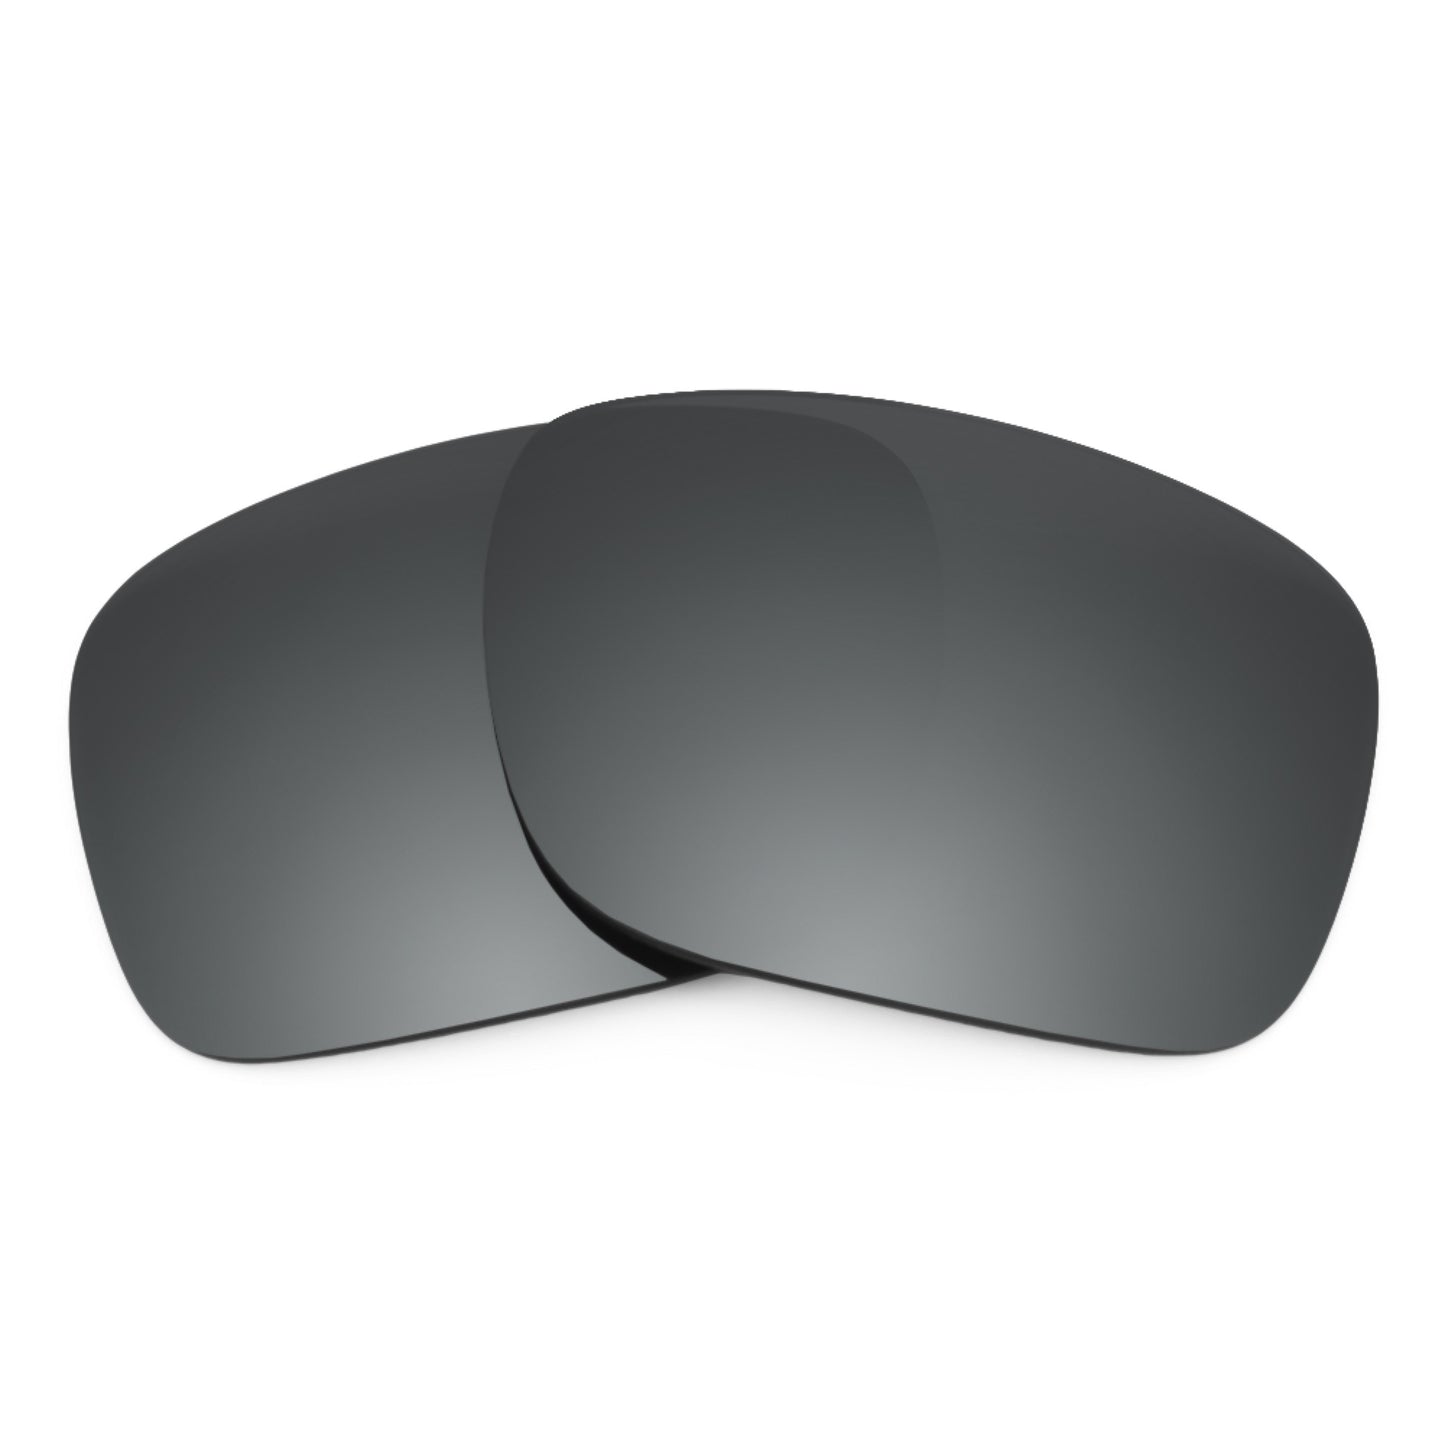 Revant replacement lenses for Oakley Sliver XL (Low Bridge Fit) Non-Polarized Black Chrome